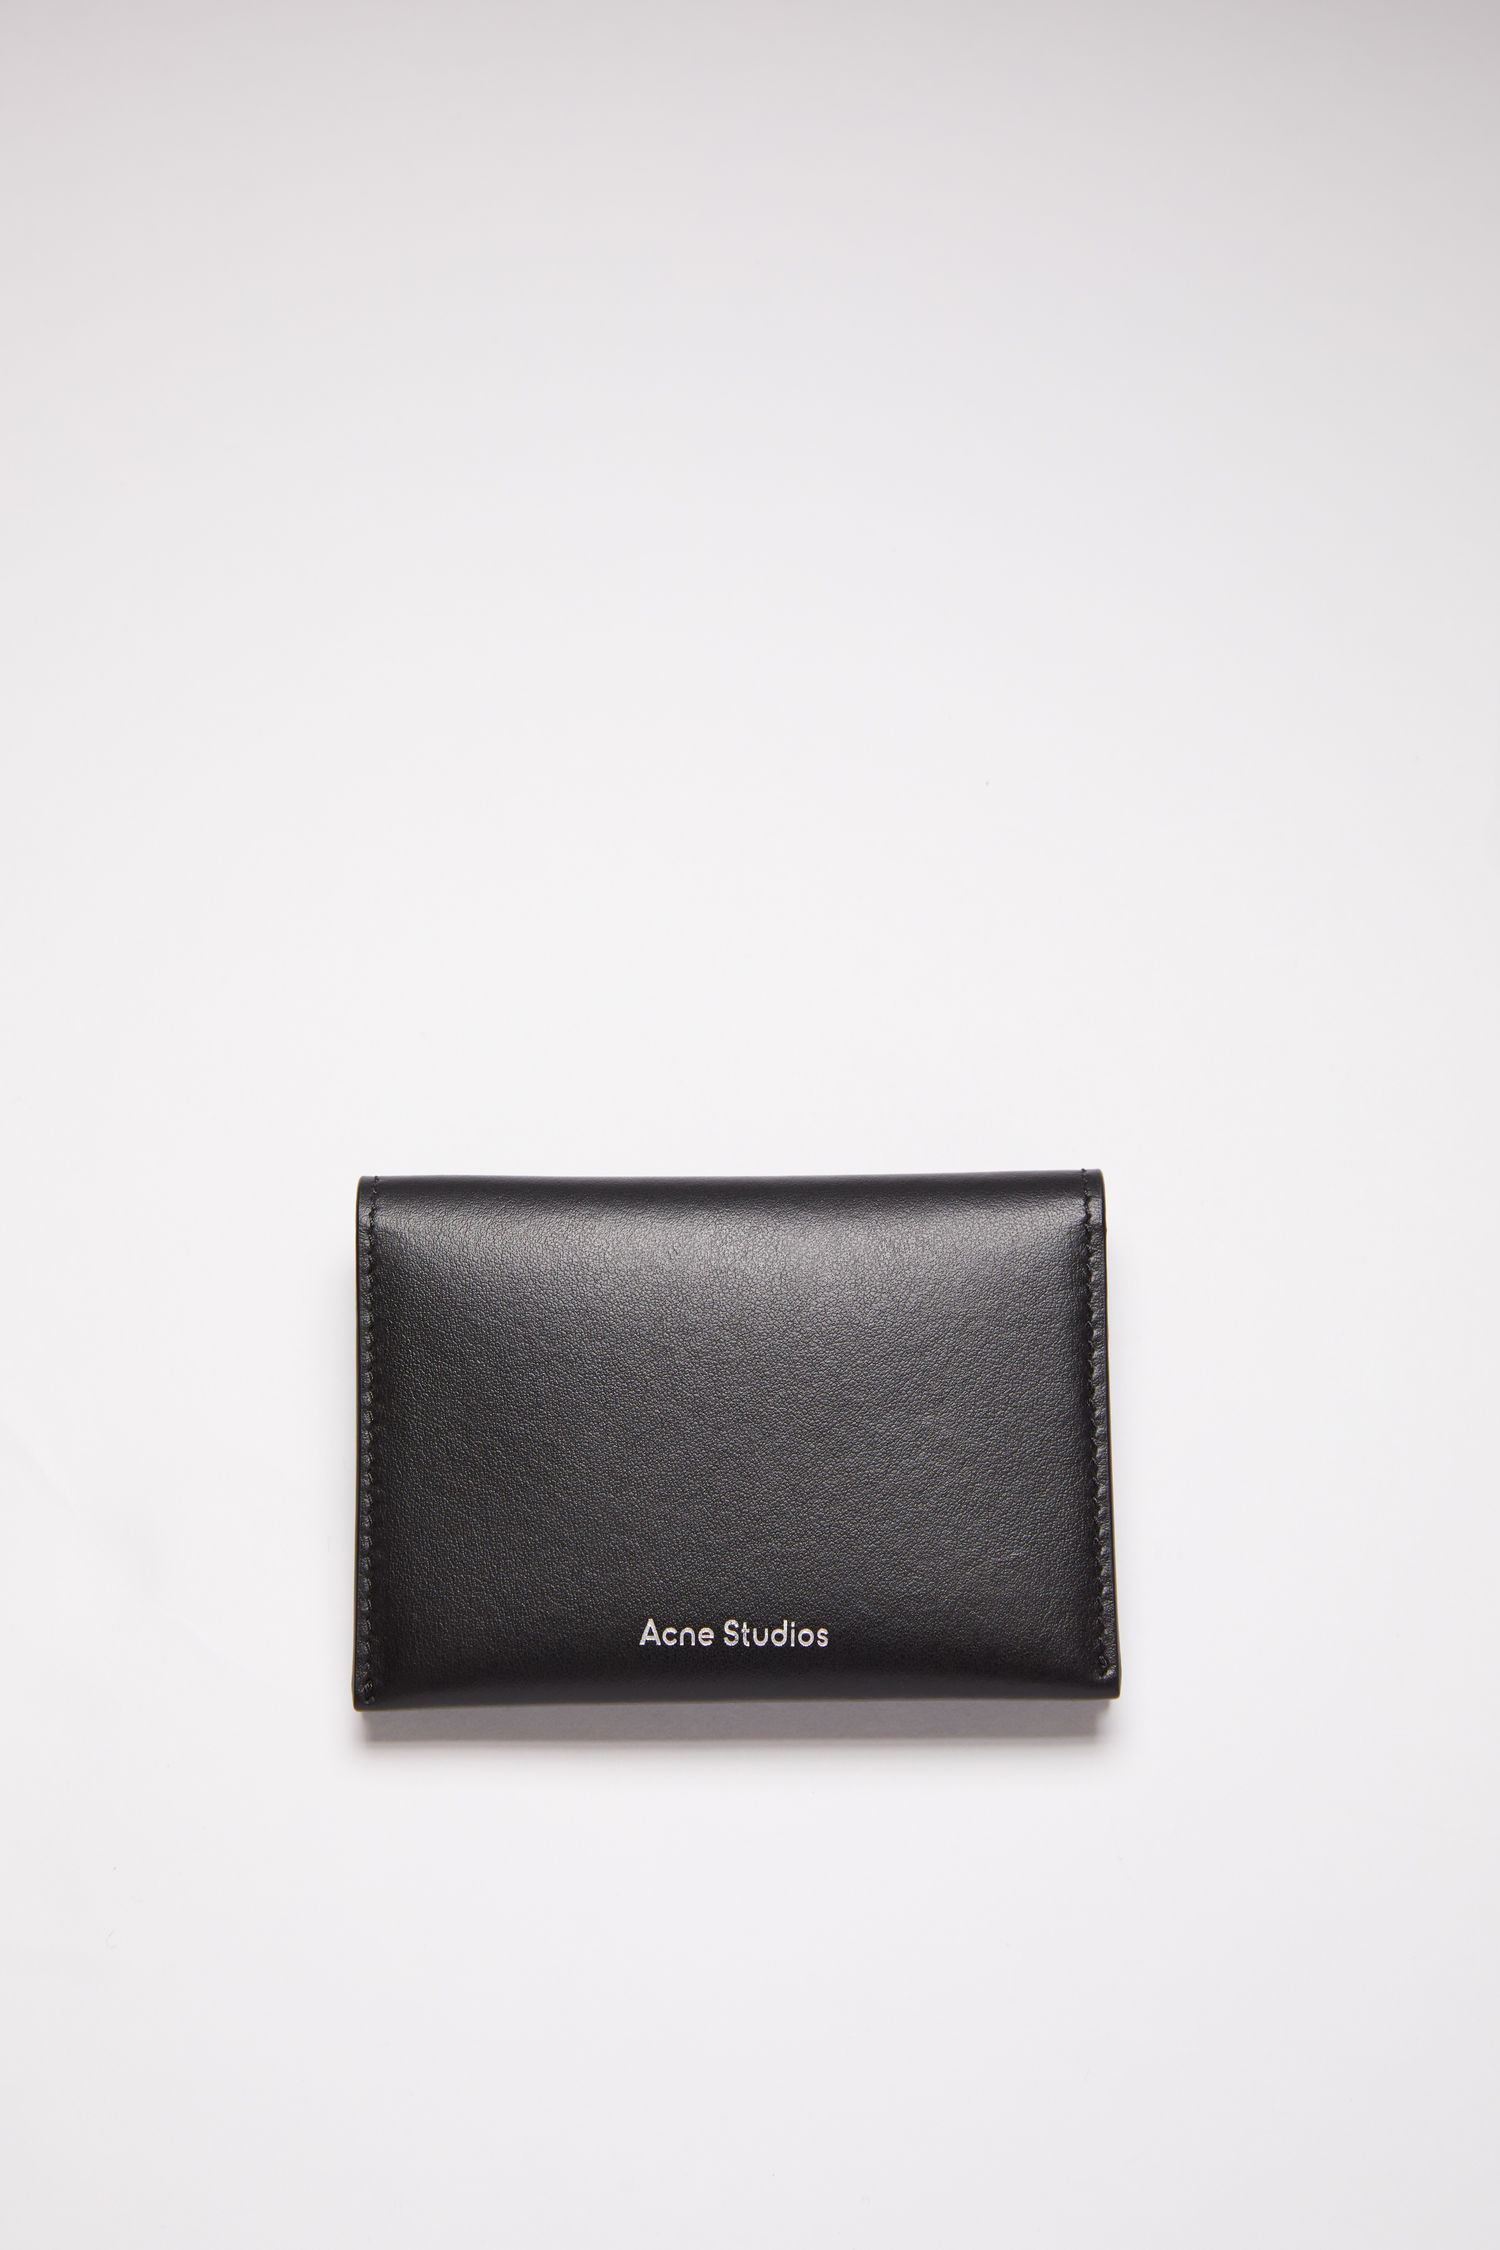 個人配送OK  黒 財布 三つ折りウォレット フォールドカードホルダー Studios Acne 折り財布